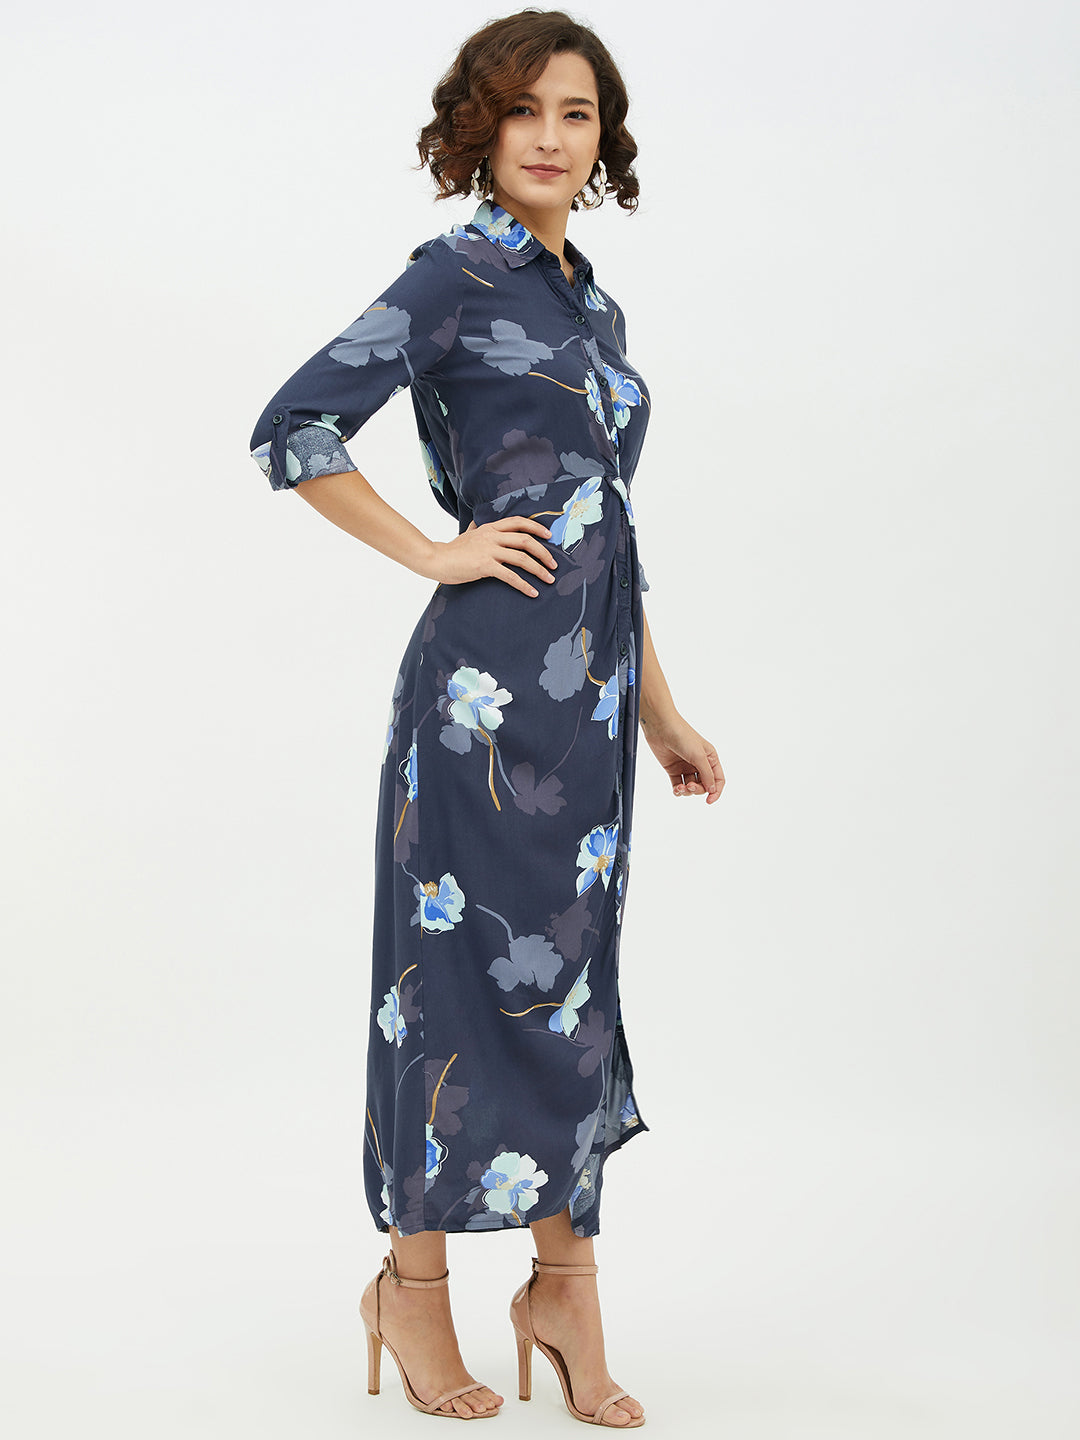 Women's Floral Print Cotton Long Dress - StyleStone